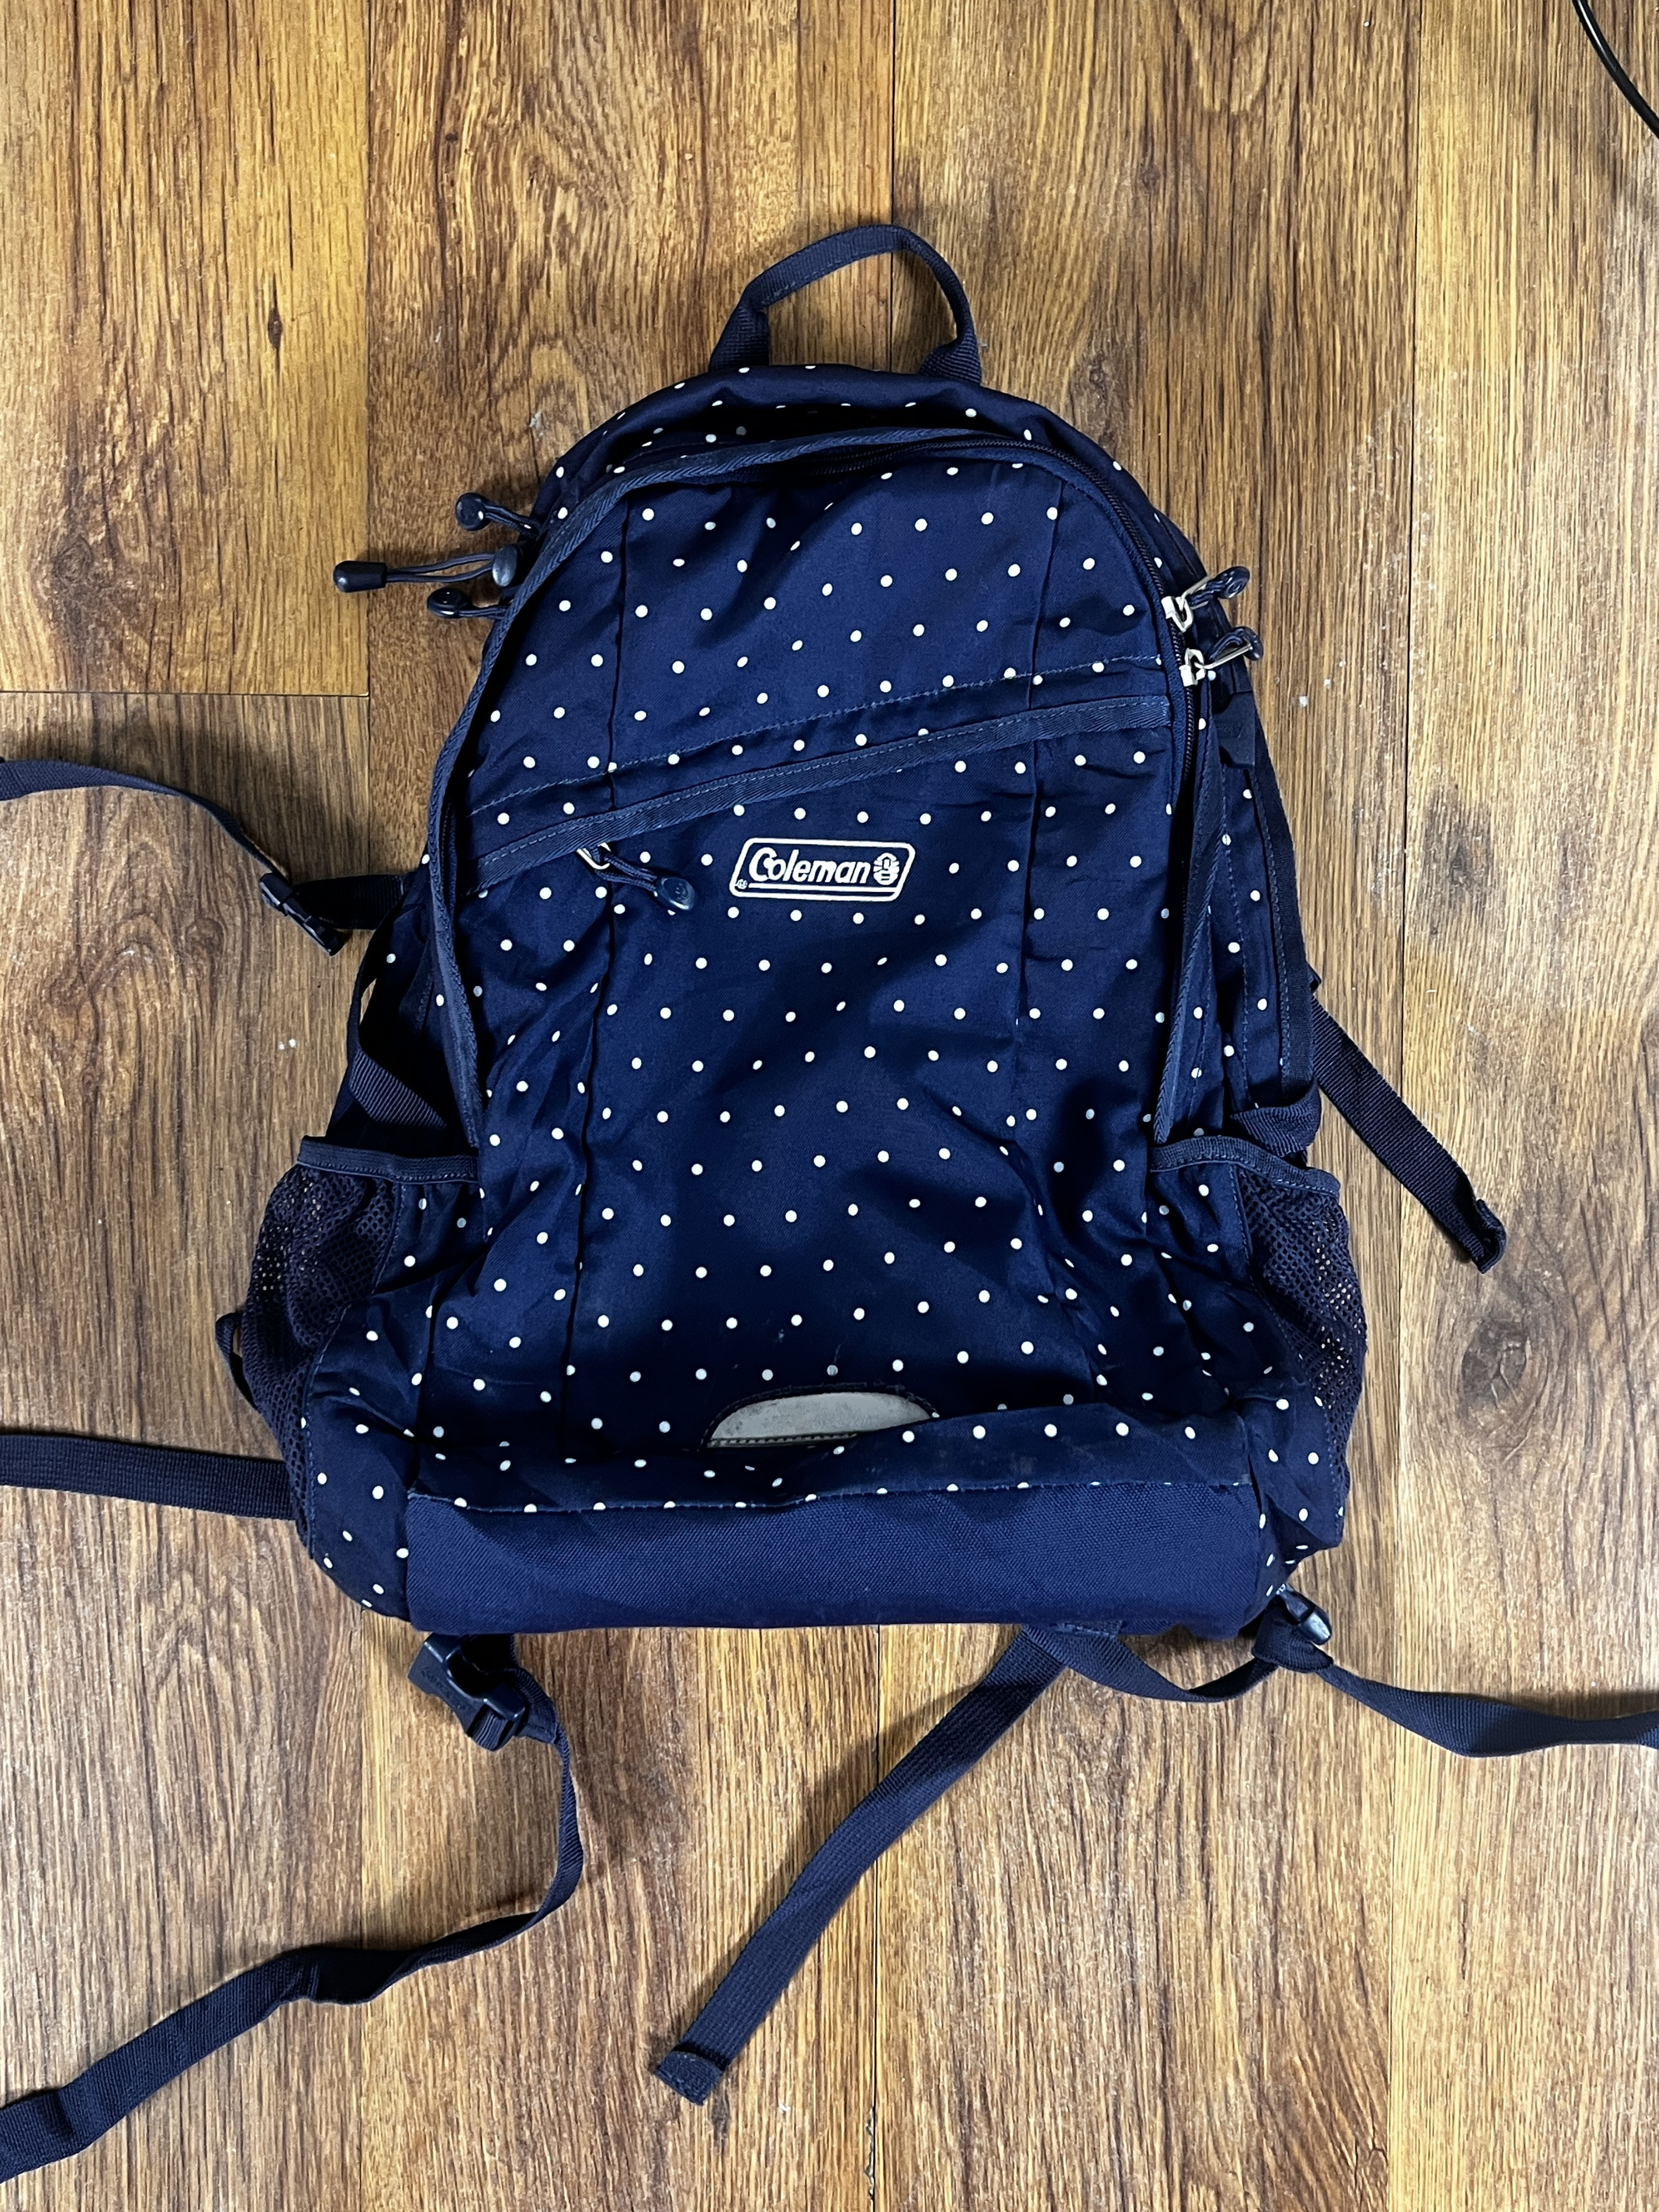 Coleman dot backpack